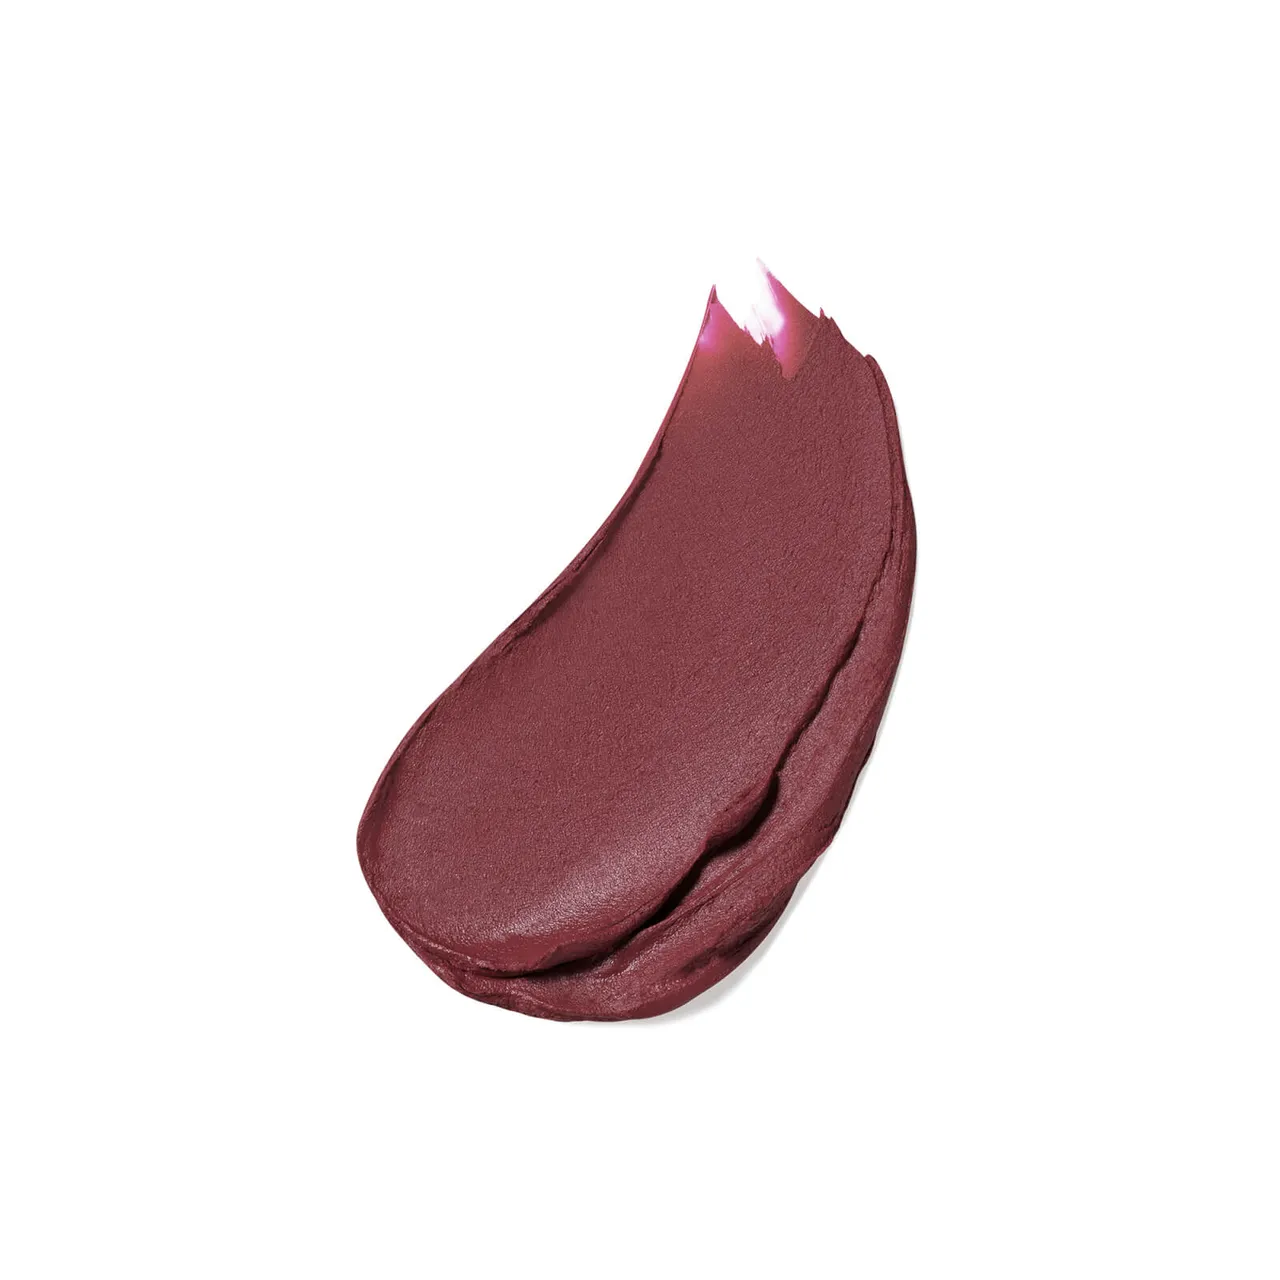 Estée Lauder Pure Colour Matte Lipstick 3.5g (Various Shades) - Don't Stop